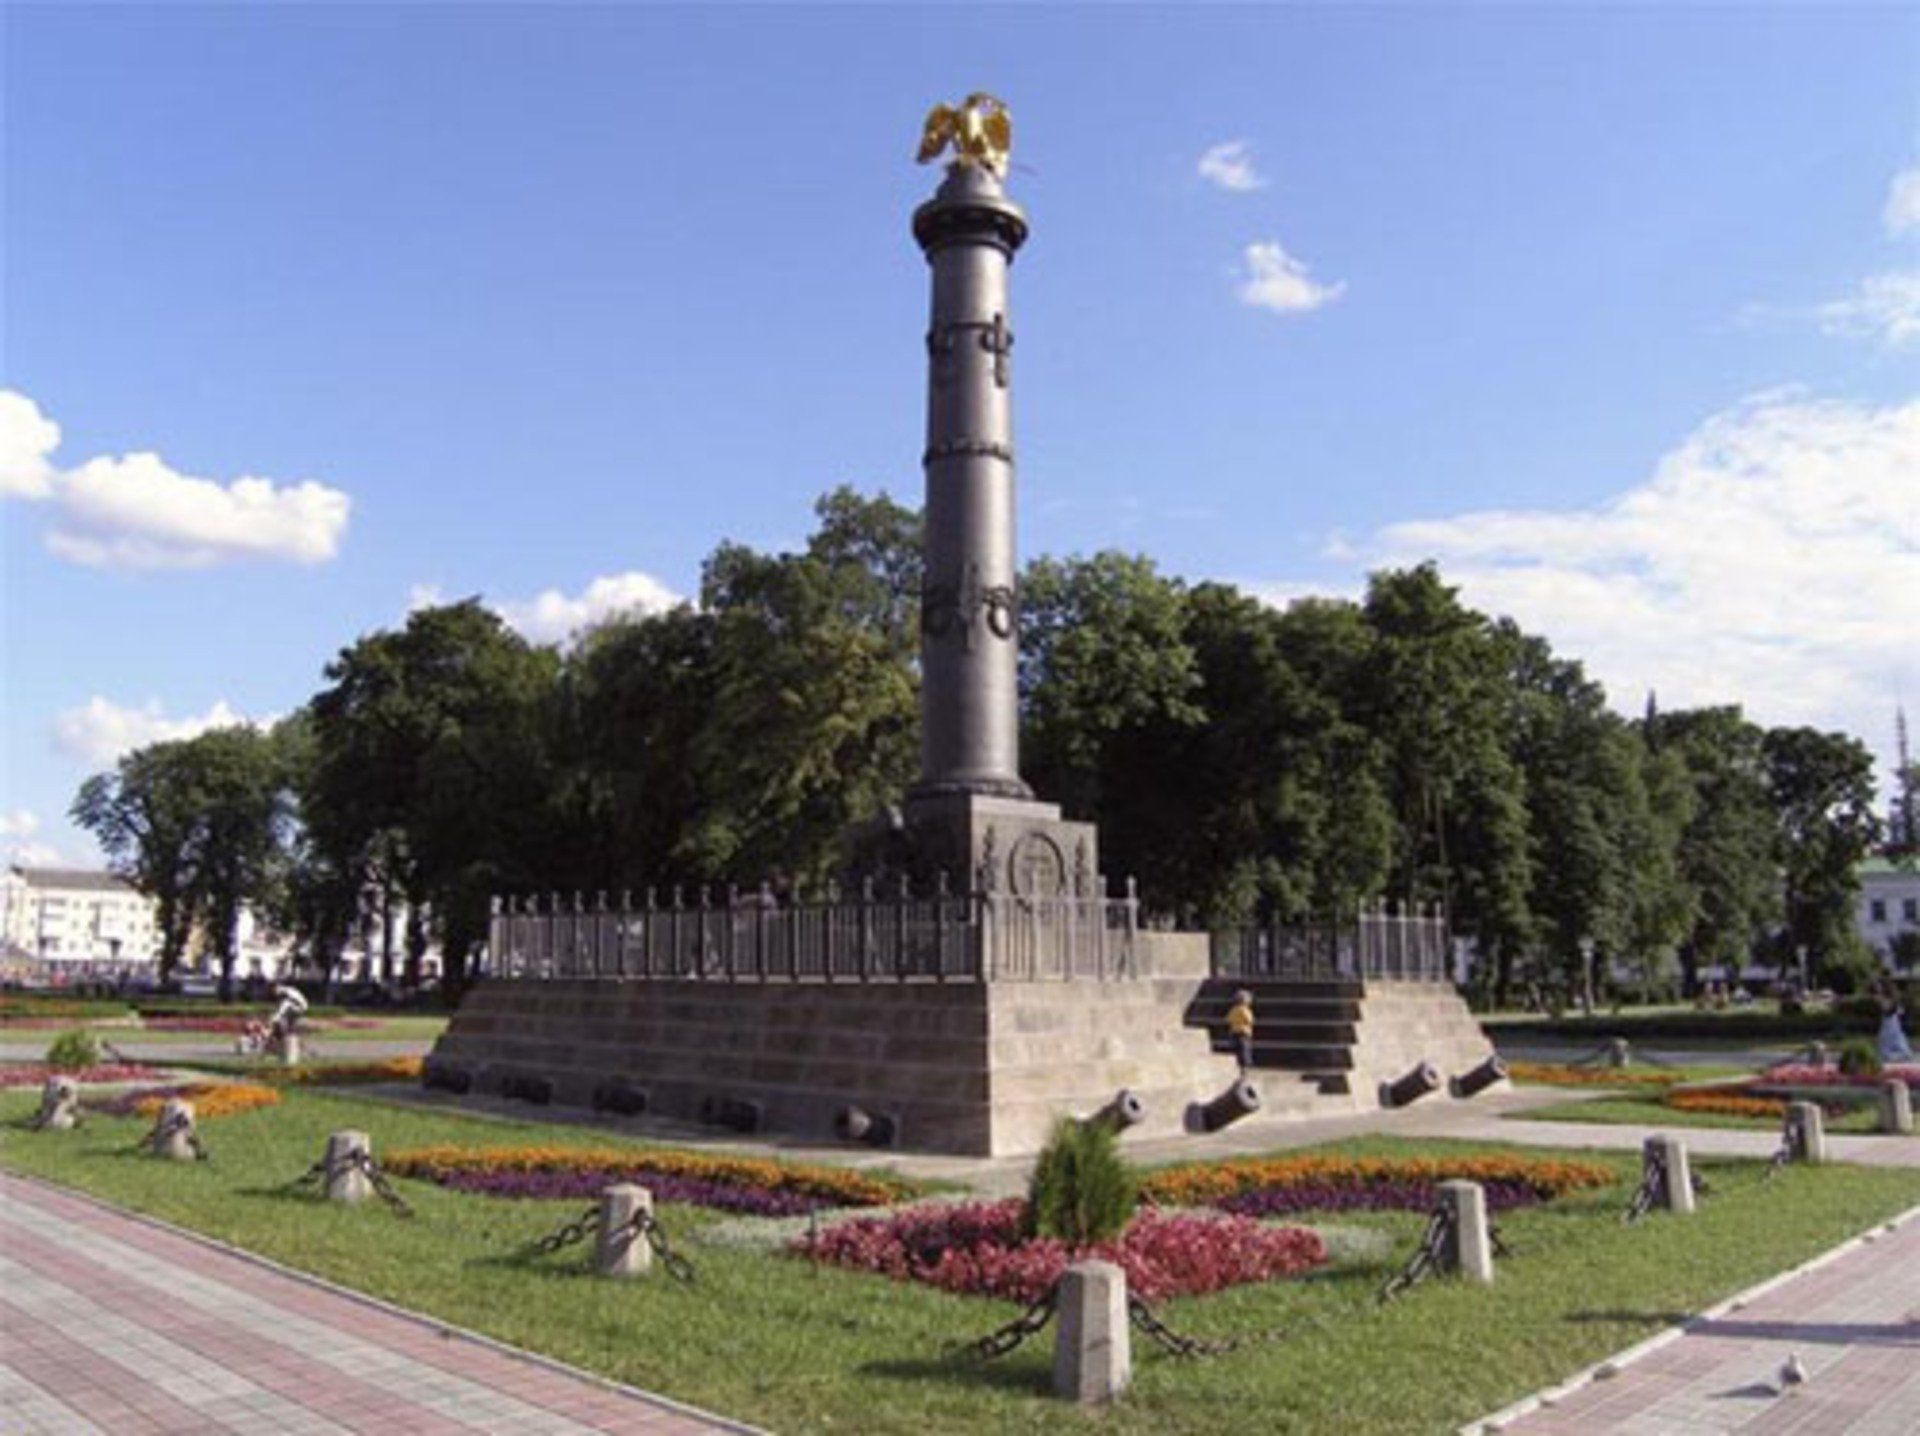 11 городов, которые помогут понять Украину